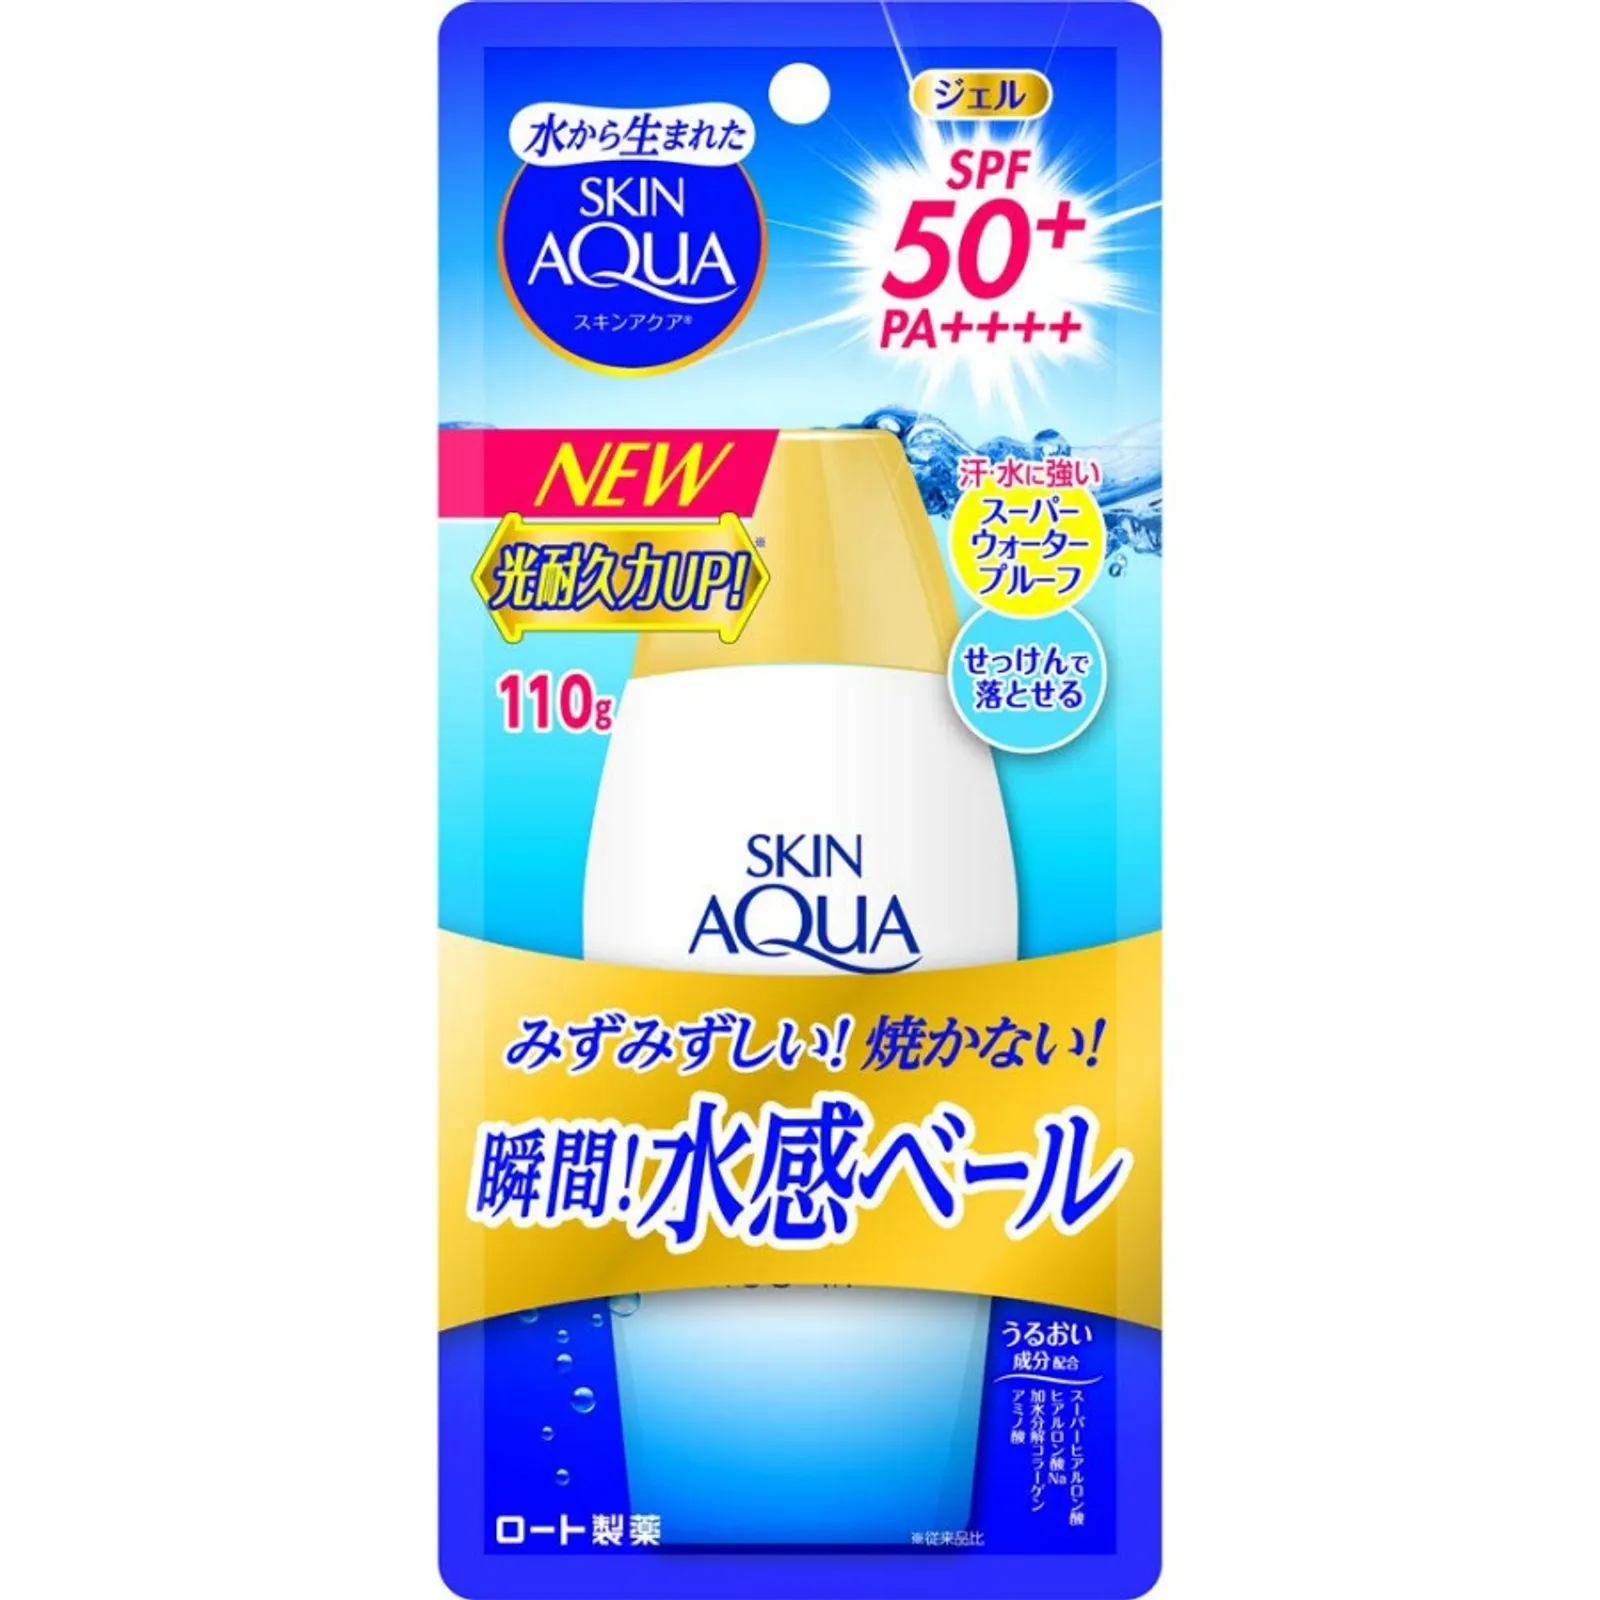 7 Rekomendasi Sunscreen dari Jepang, Formula dan Proteksinya Terbaik